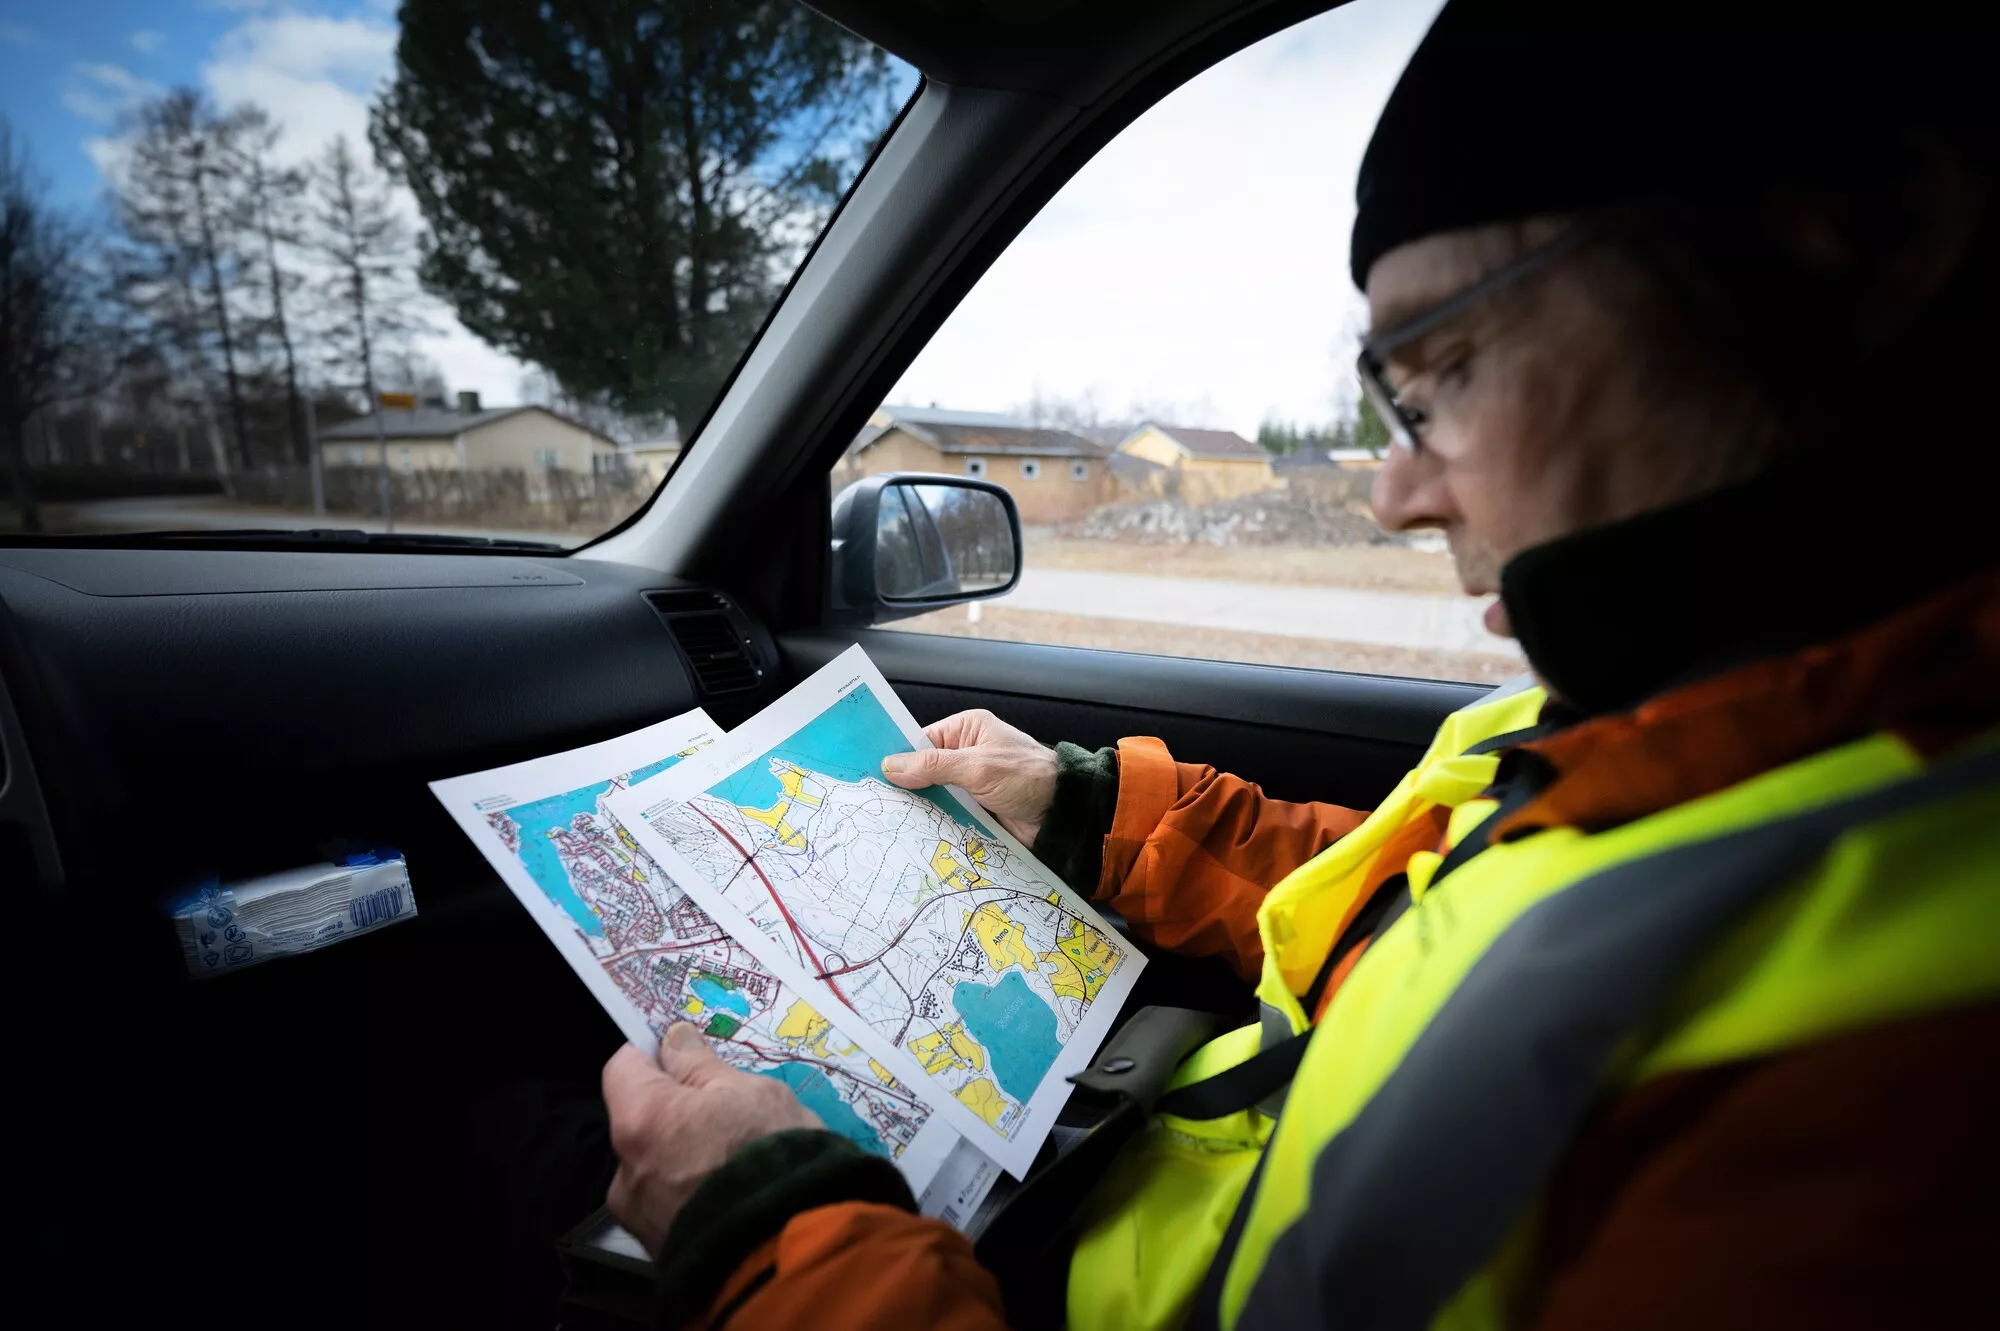 Rautavaaralainen Hannu Huusko tutkii kartasta etsittävää aluetta.